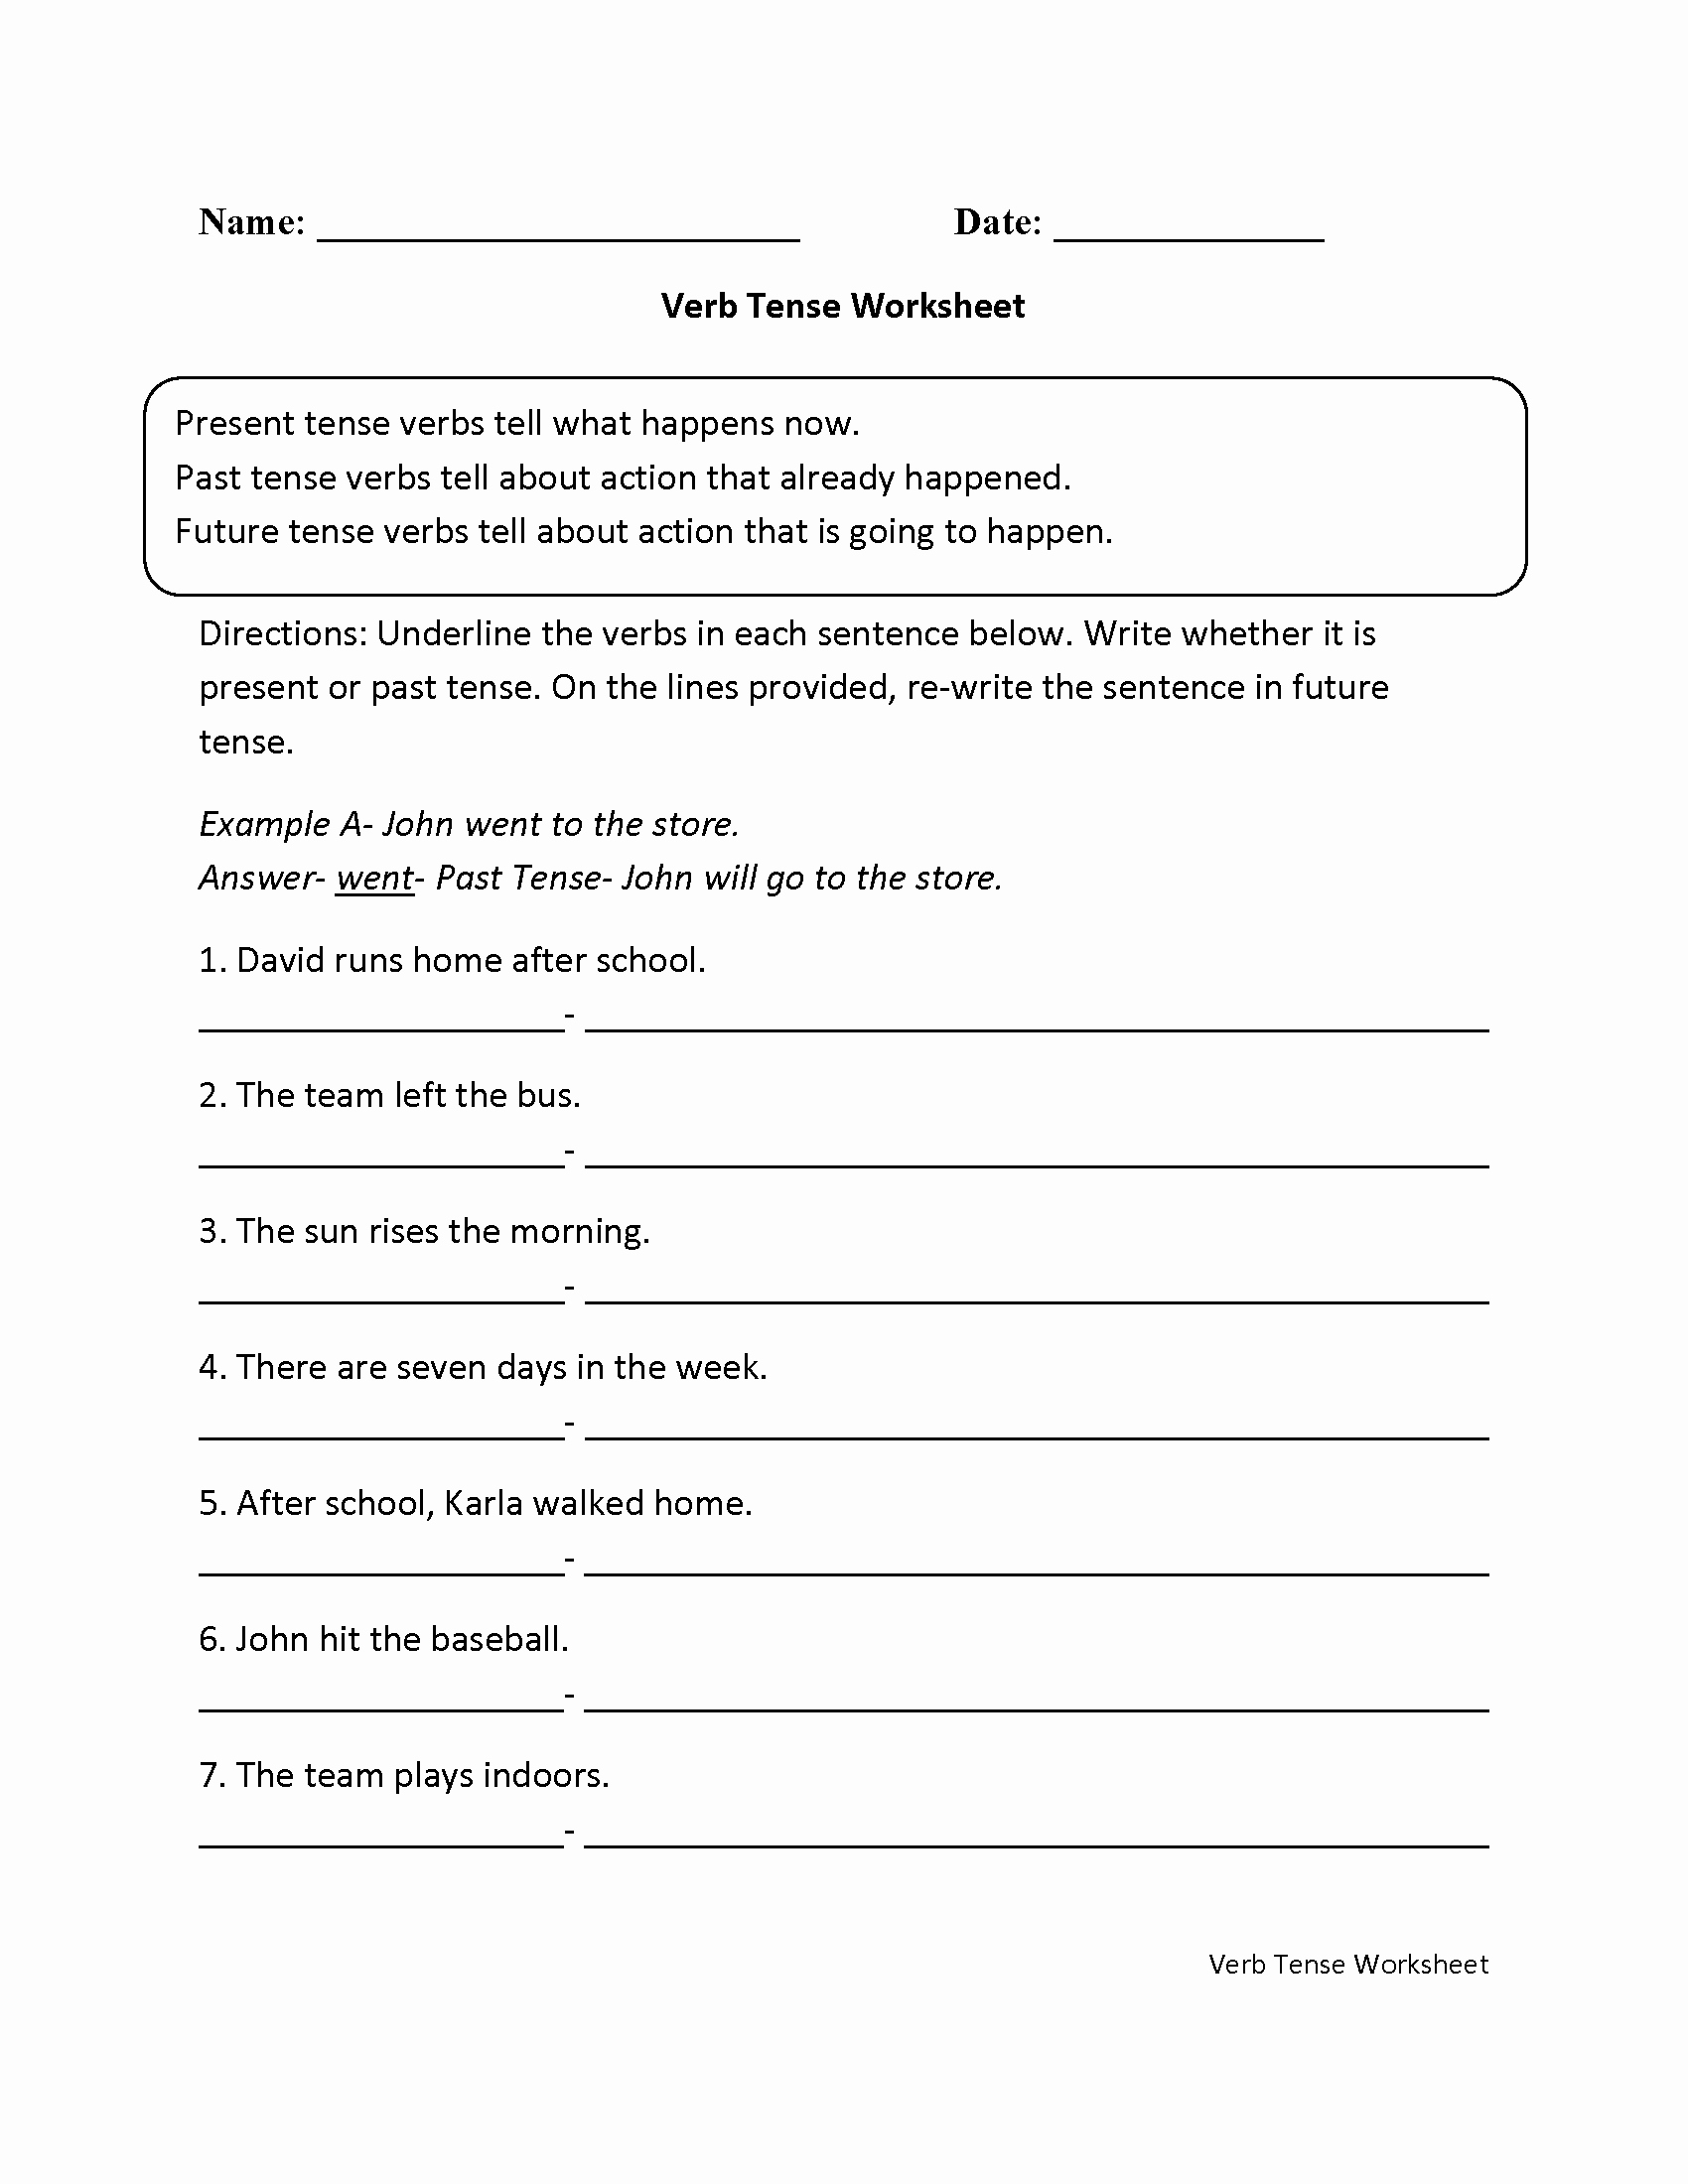 Tenses Worksheets for Grade 6 Lovely Tenses Worksheet for Grade 6